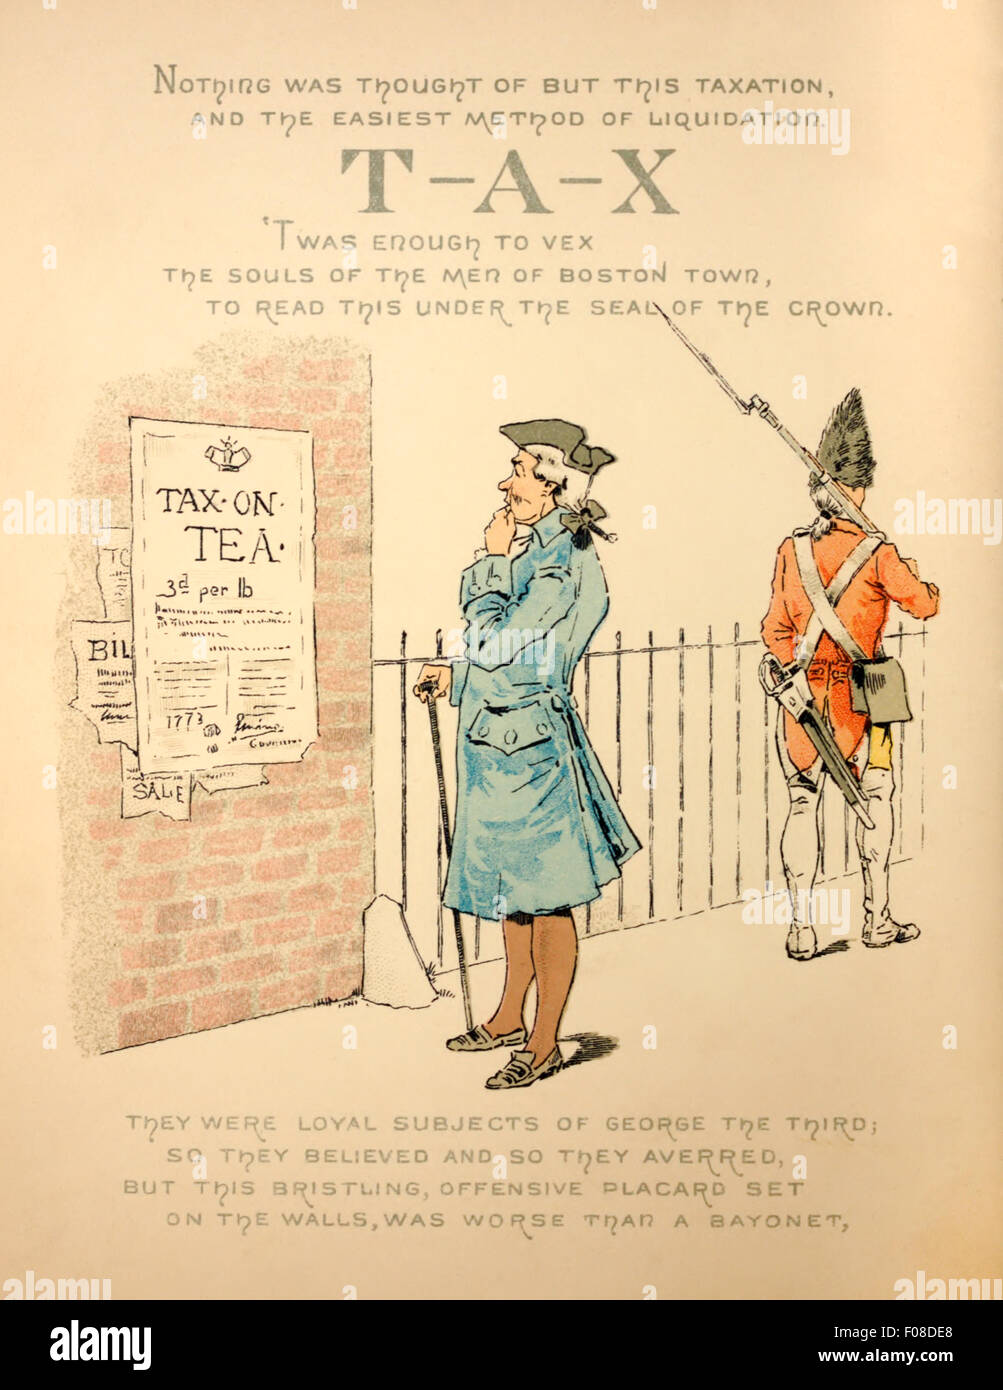 Amerikanische Kolonisten liest über die neue Steuer auf Tee, ein britischer Soldaten marschiert hinter. Illustration von Josephine Pollard (1834-1892). Siehe Beschreibung für mehr Informationen. Stockfoto